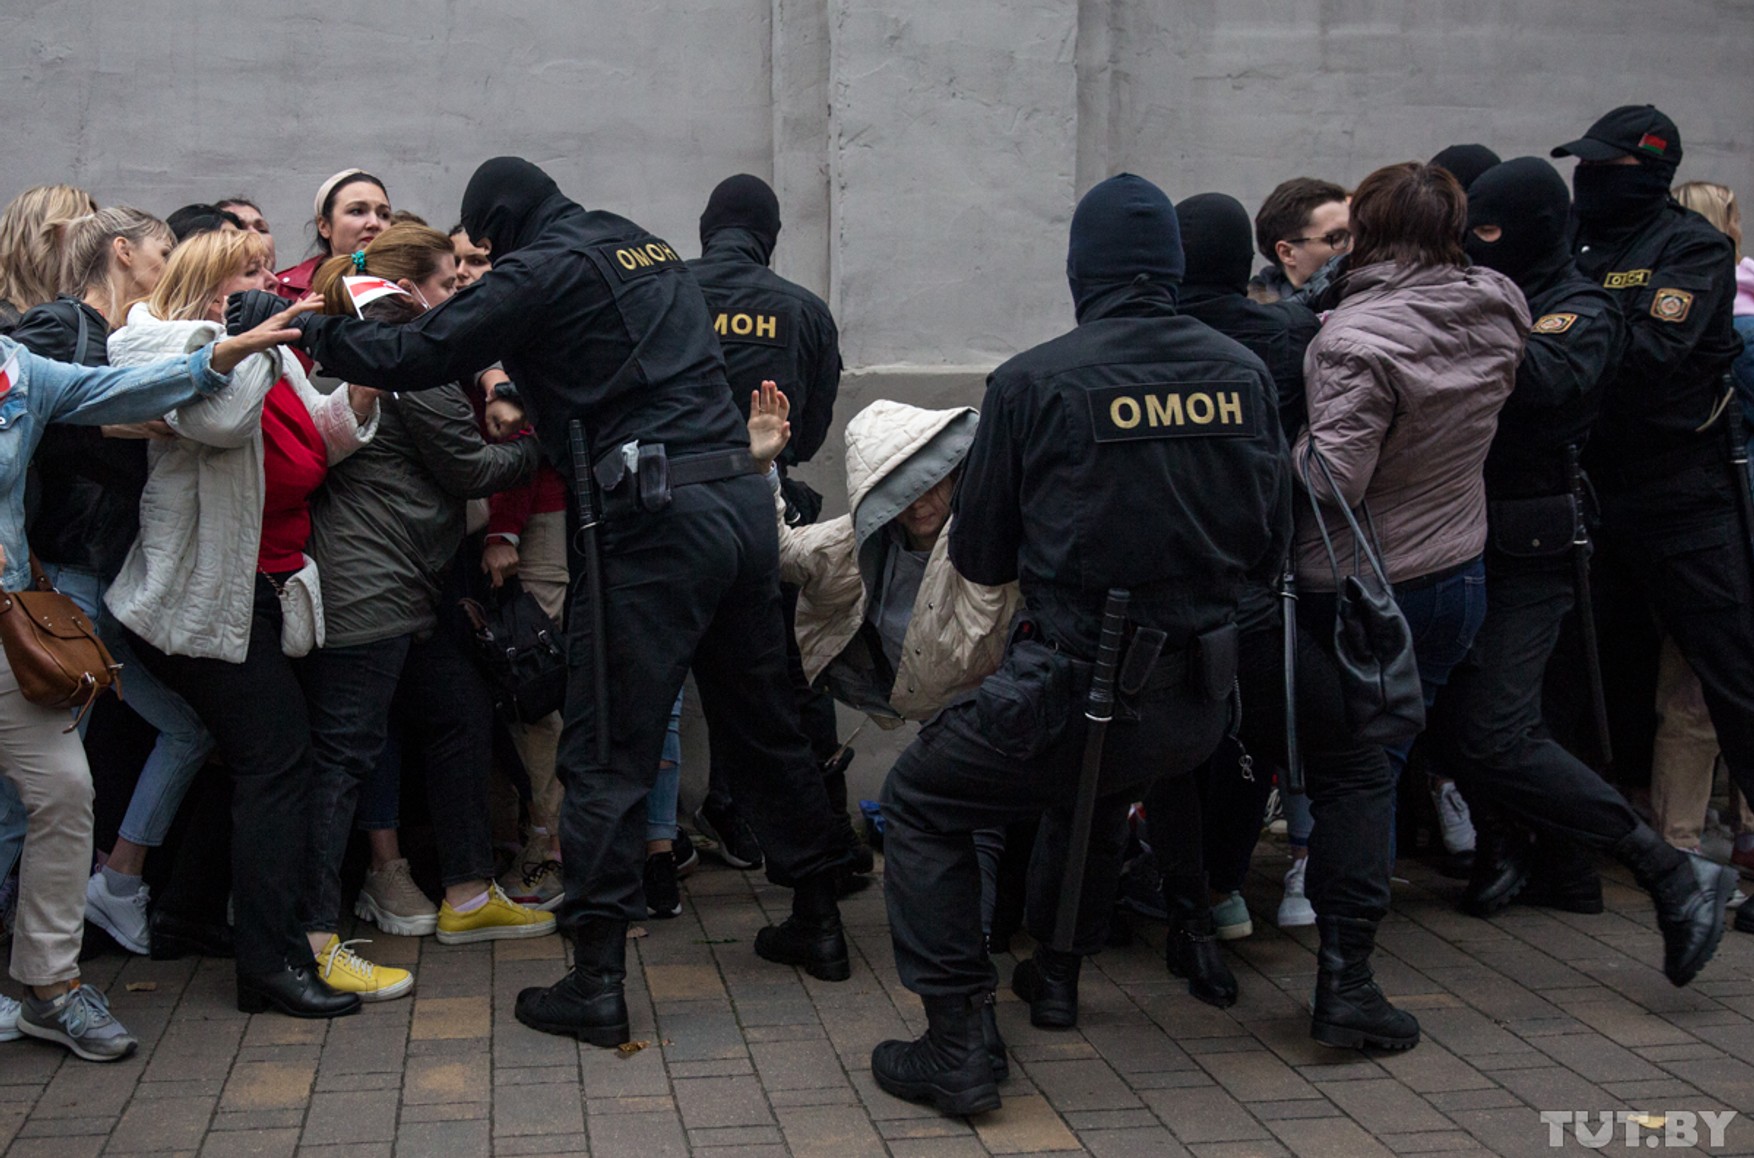 Понад 20 людей затримали на студентській конференції в Мінську